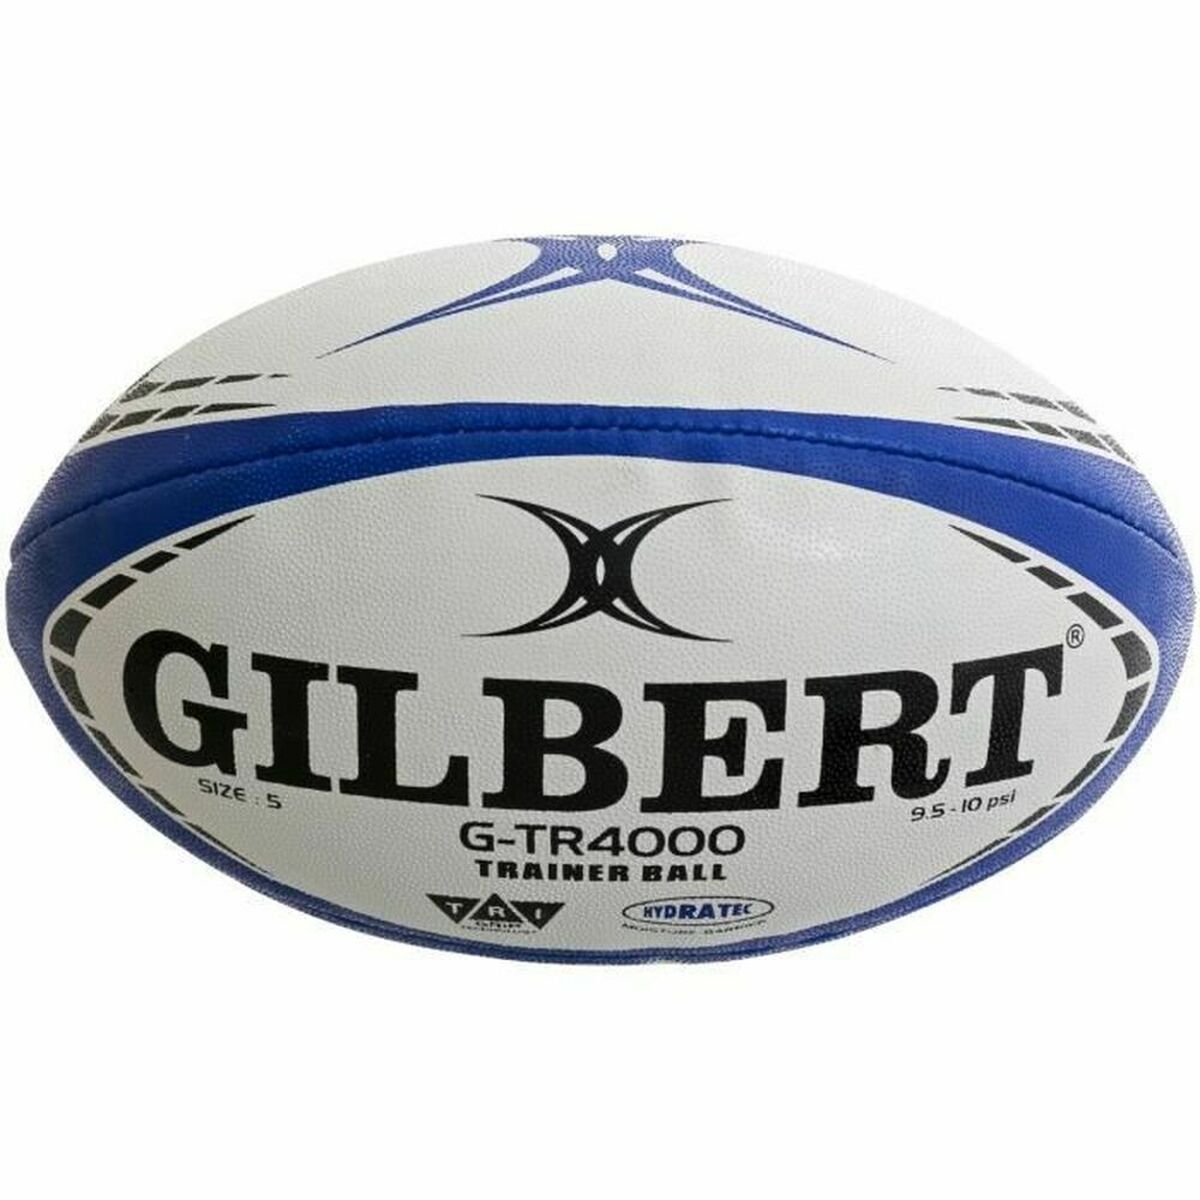 Rugby Ball Gilbert G-TR4000 TRAINER Bunt 3 Blau Marineblau